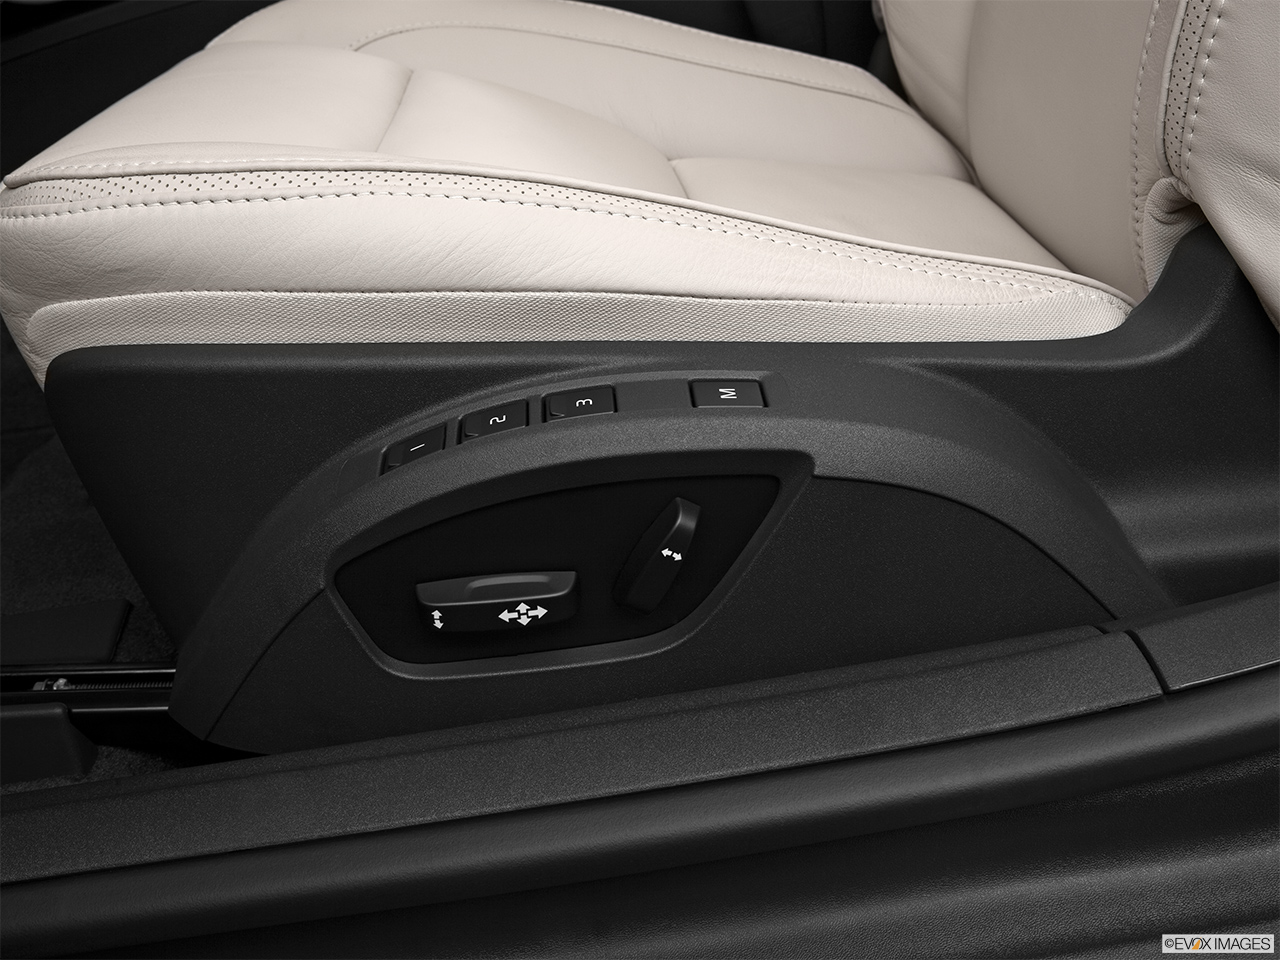 2013 Volvo C70 T5 Platinum Seat Adjustment Controllers. 